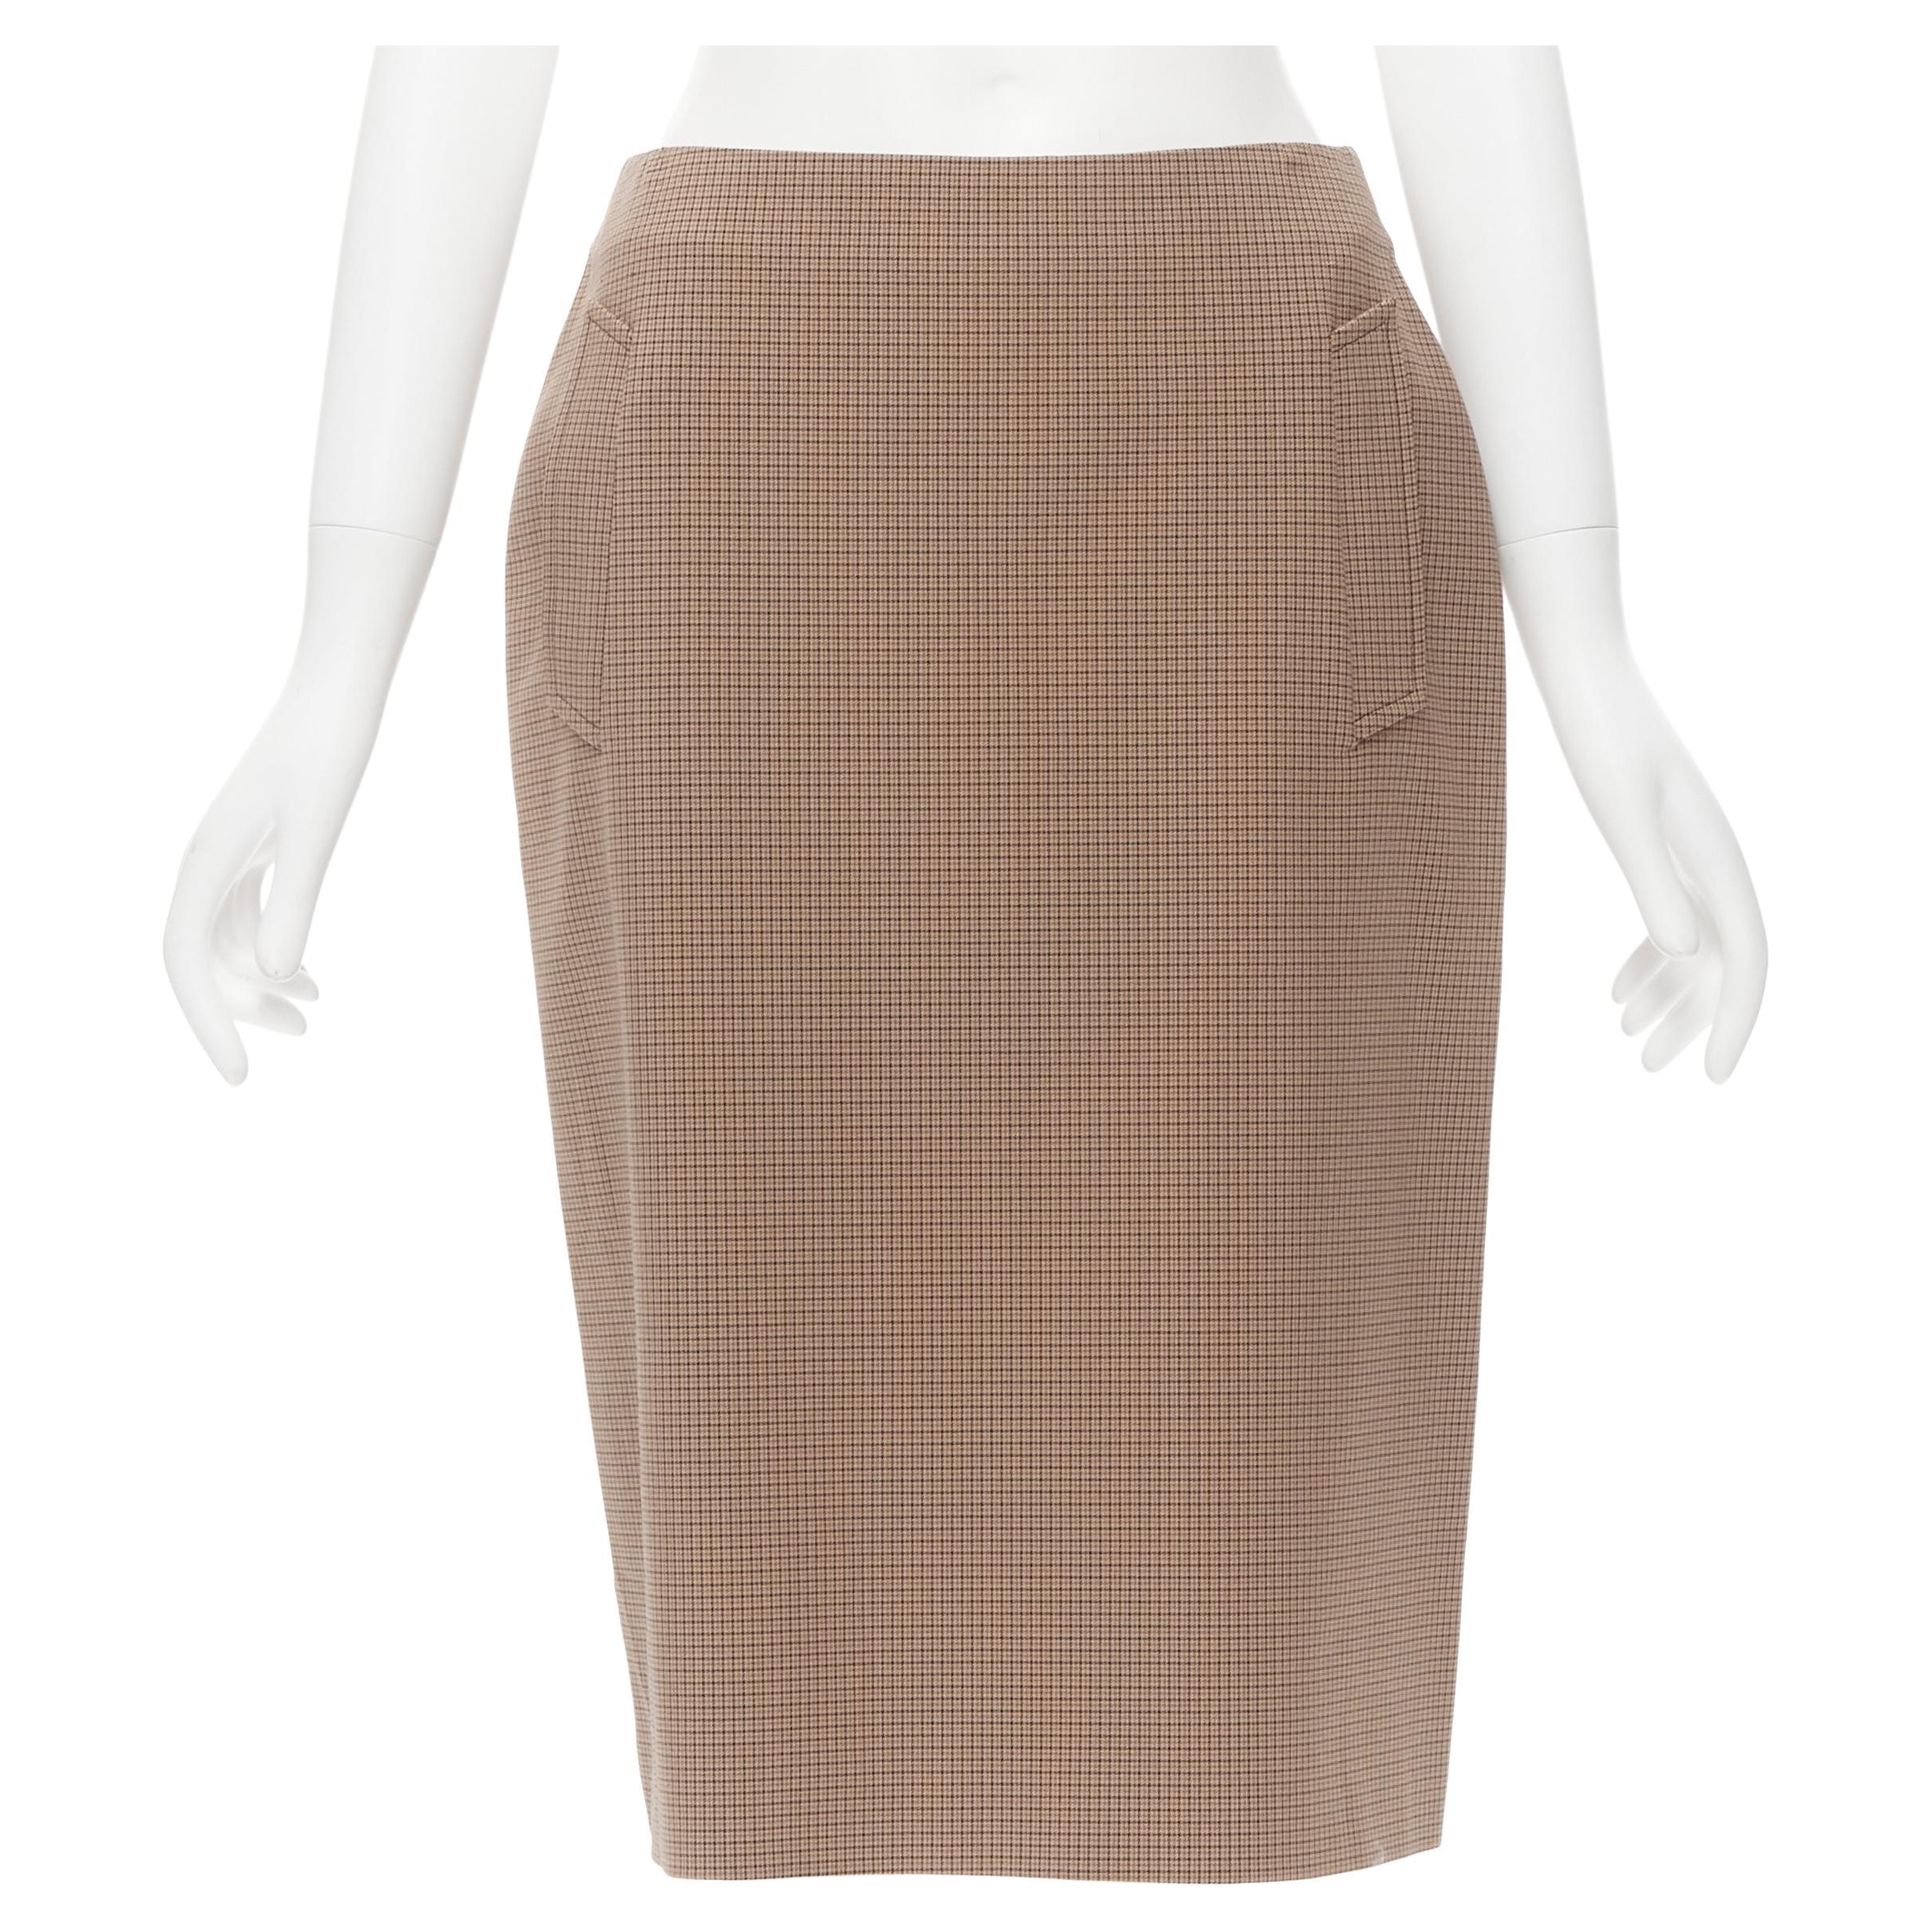 PRADA brown gingham check crepe dual pocket knee length skirt IT42 M